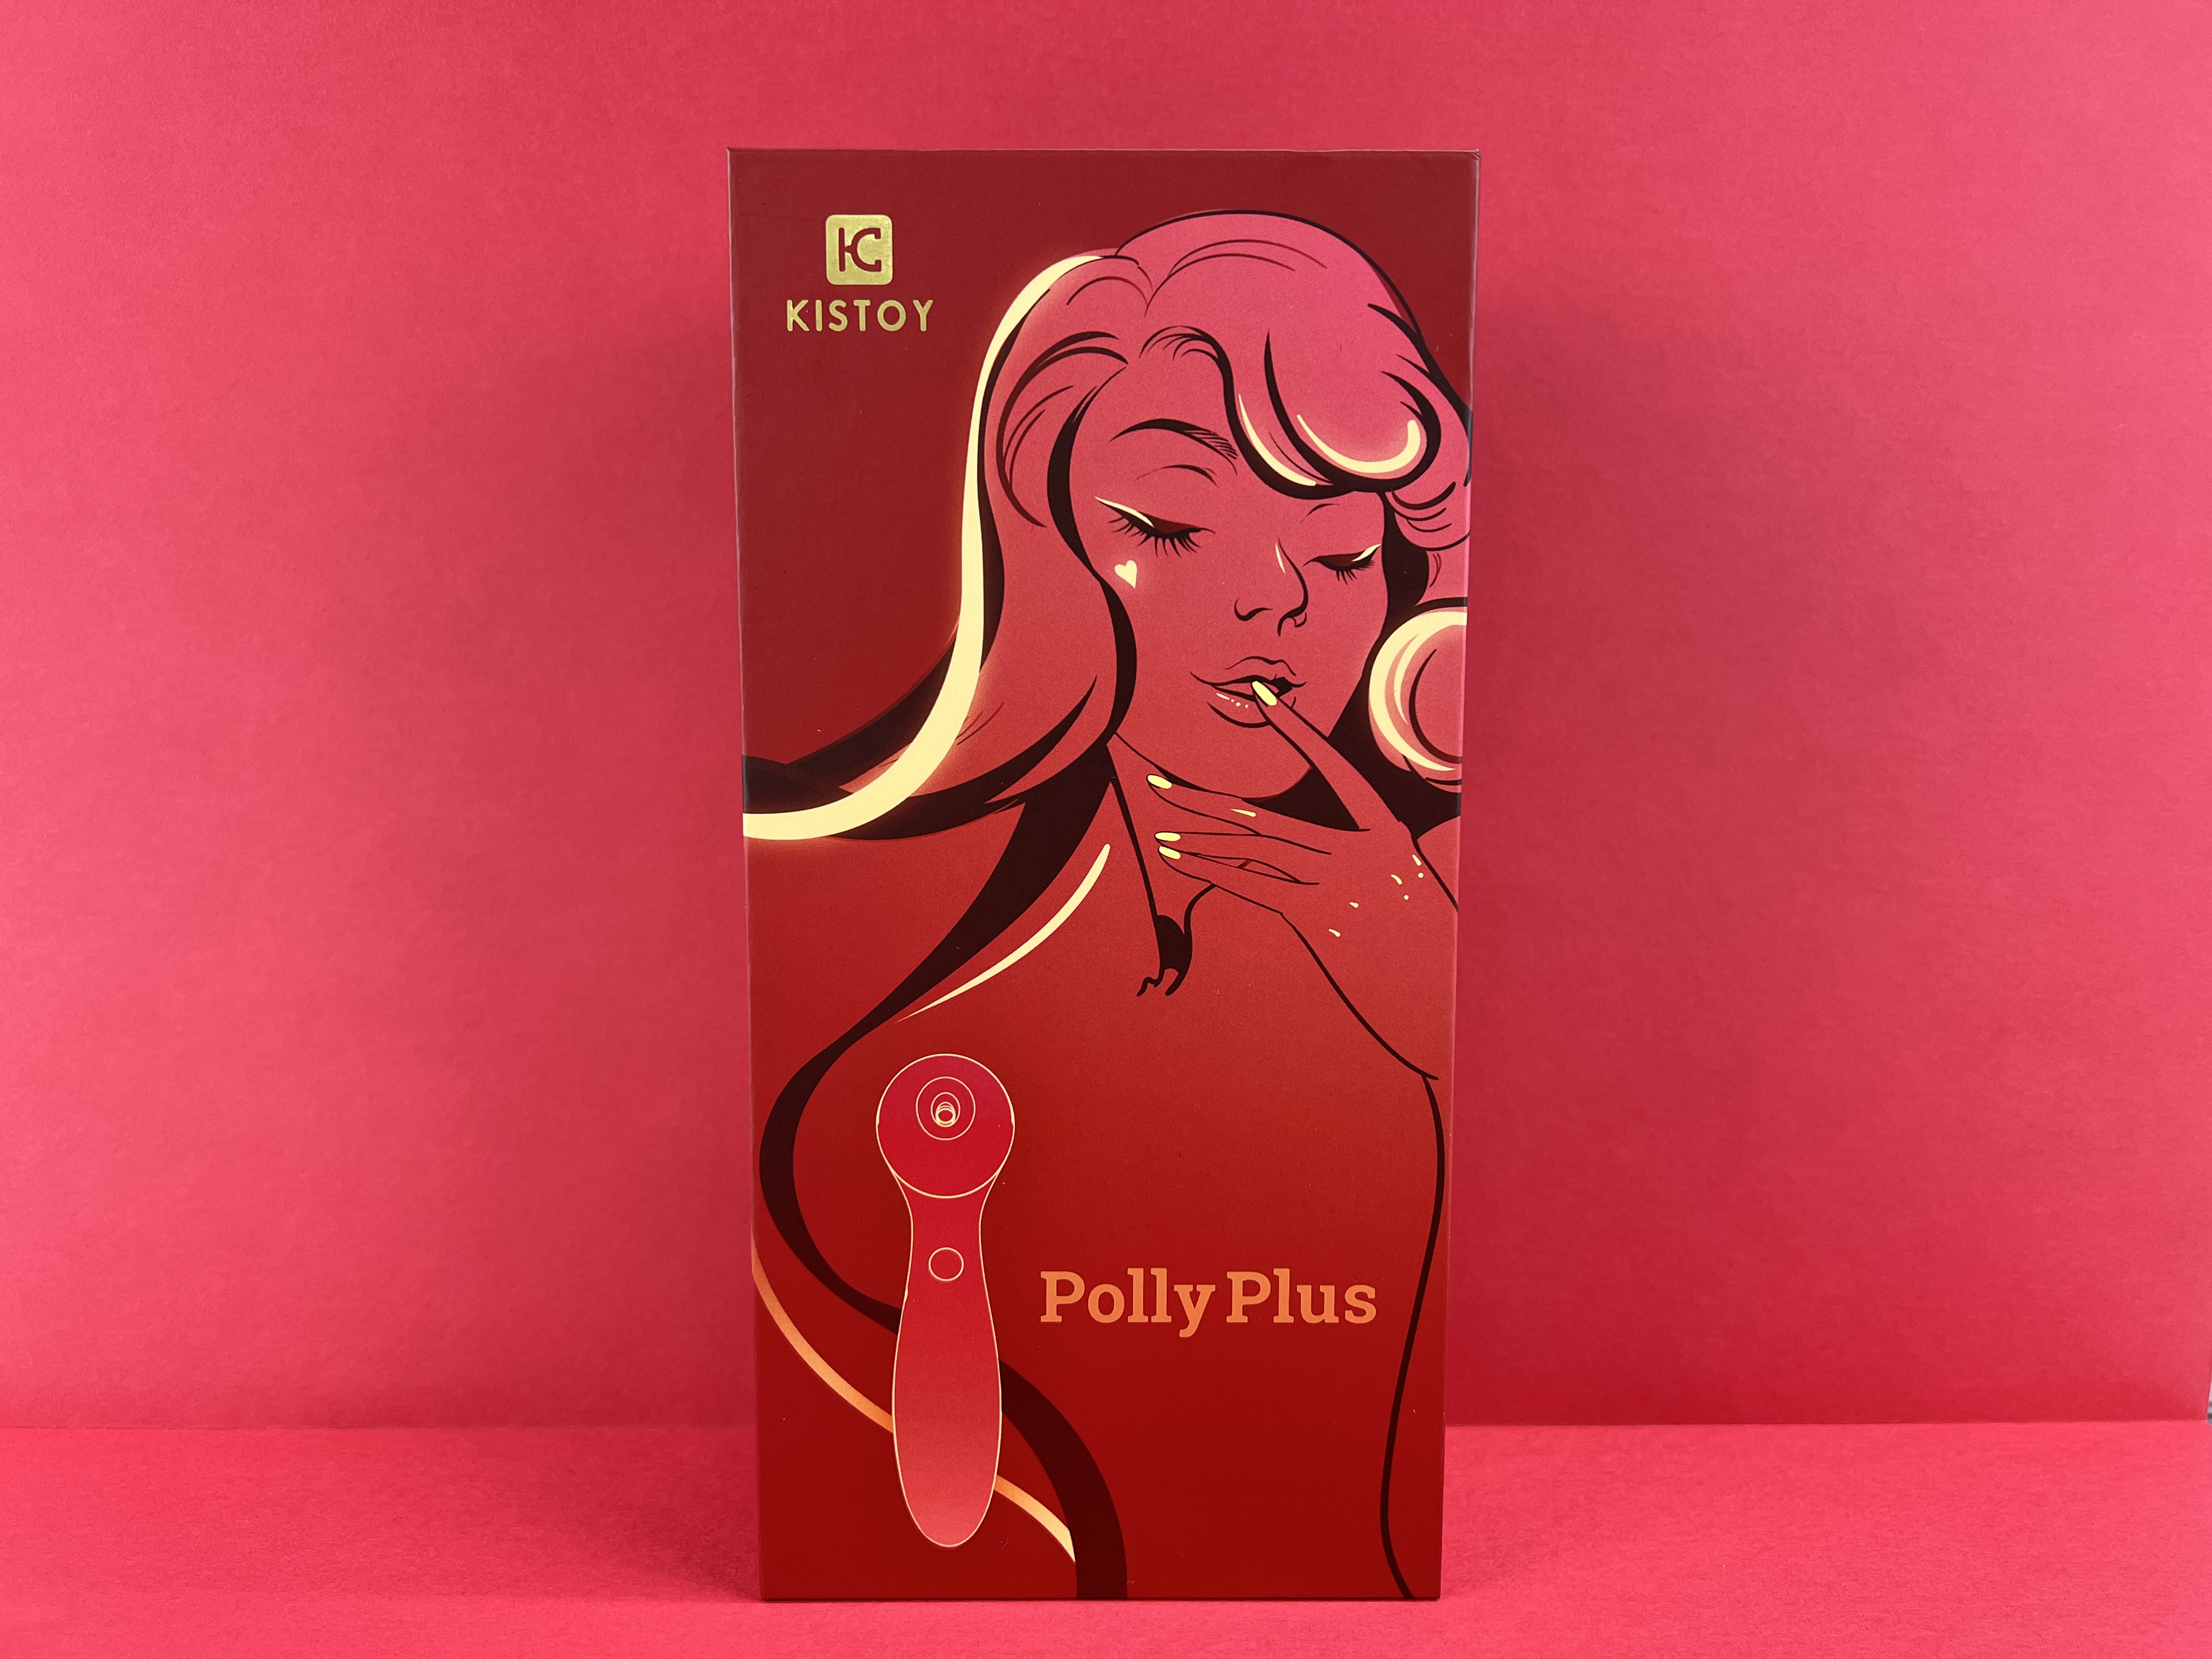 Polly Plus